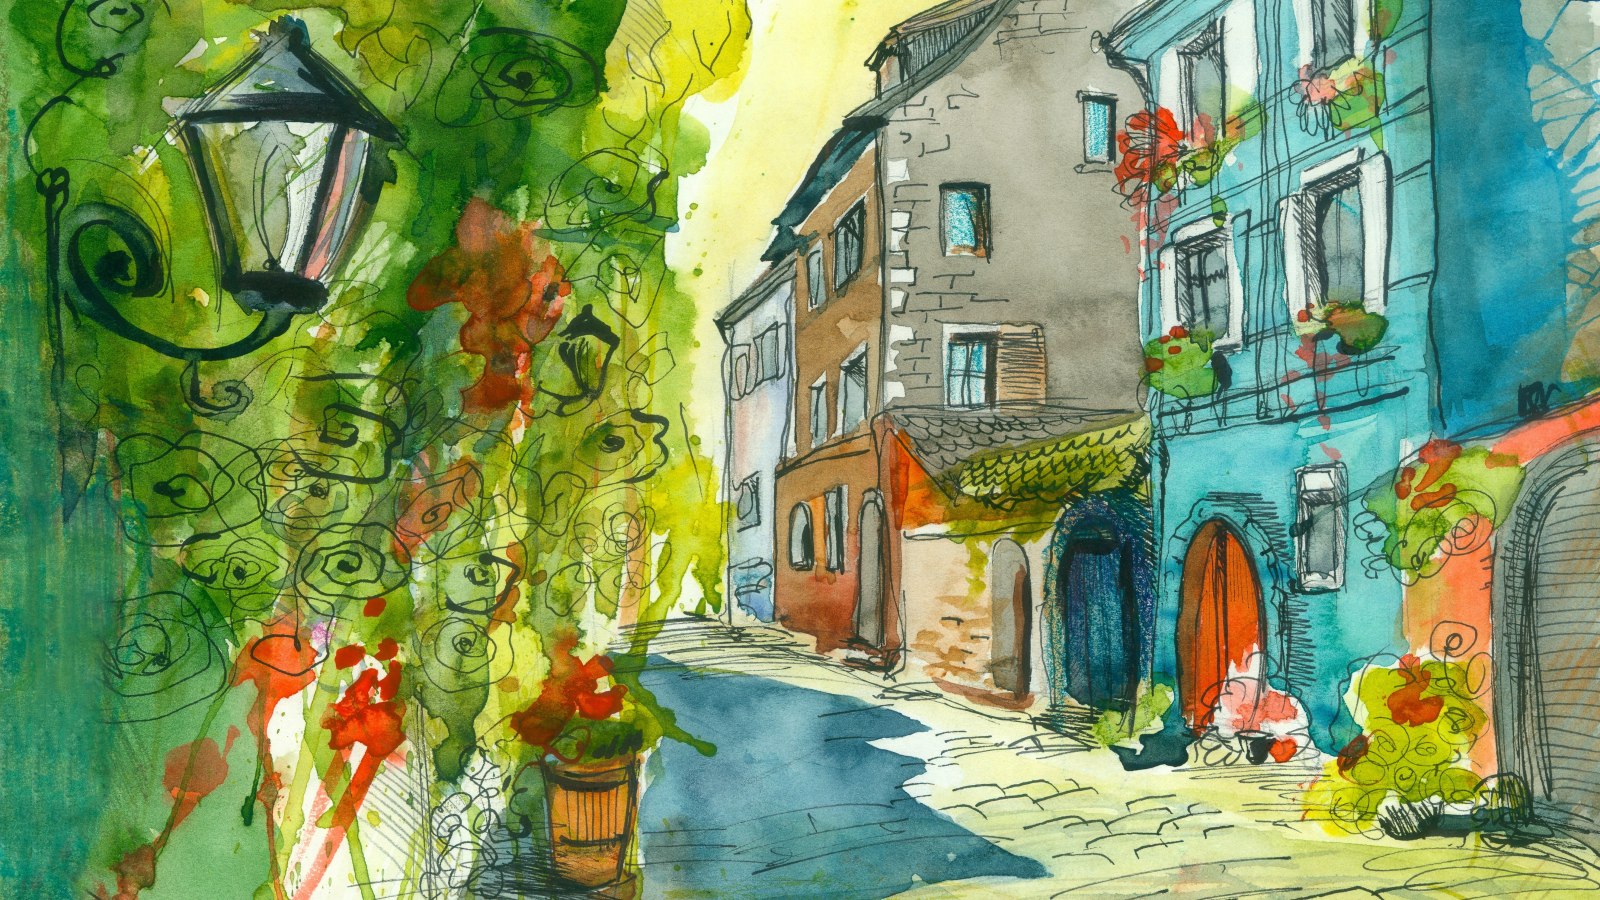 акварельный рисунок, улица, дома, фонарь, цветы